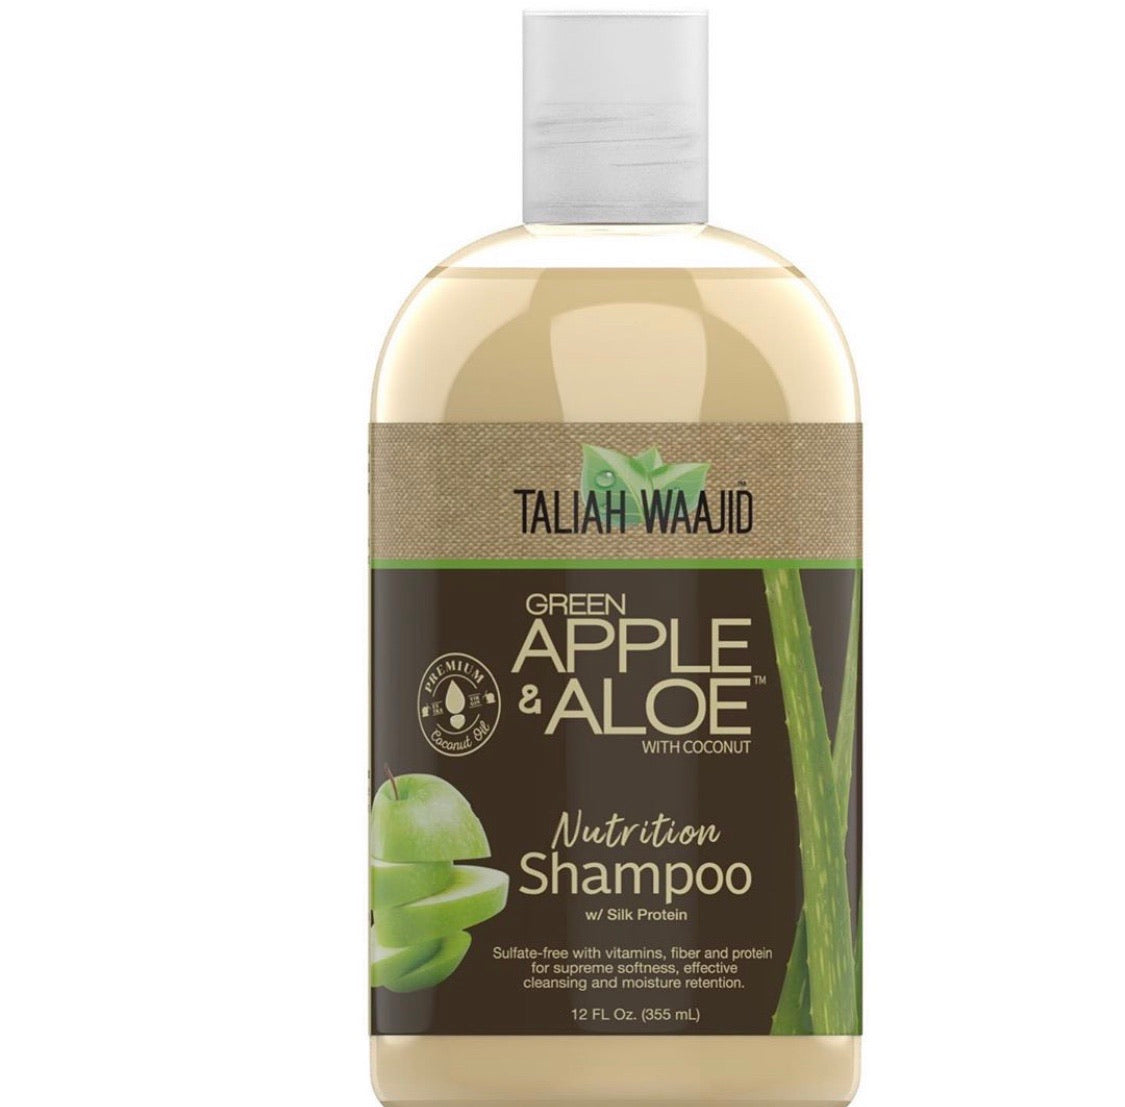 Talijah Waajid Apple & Aloe Shampoo